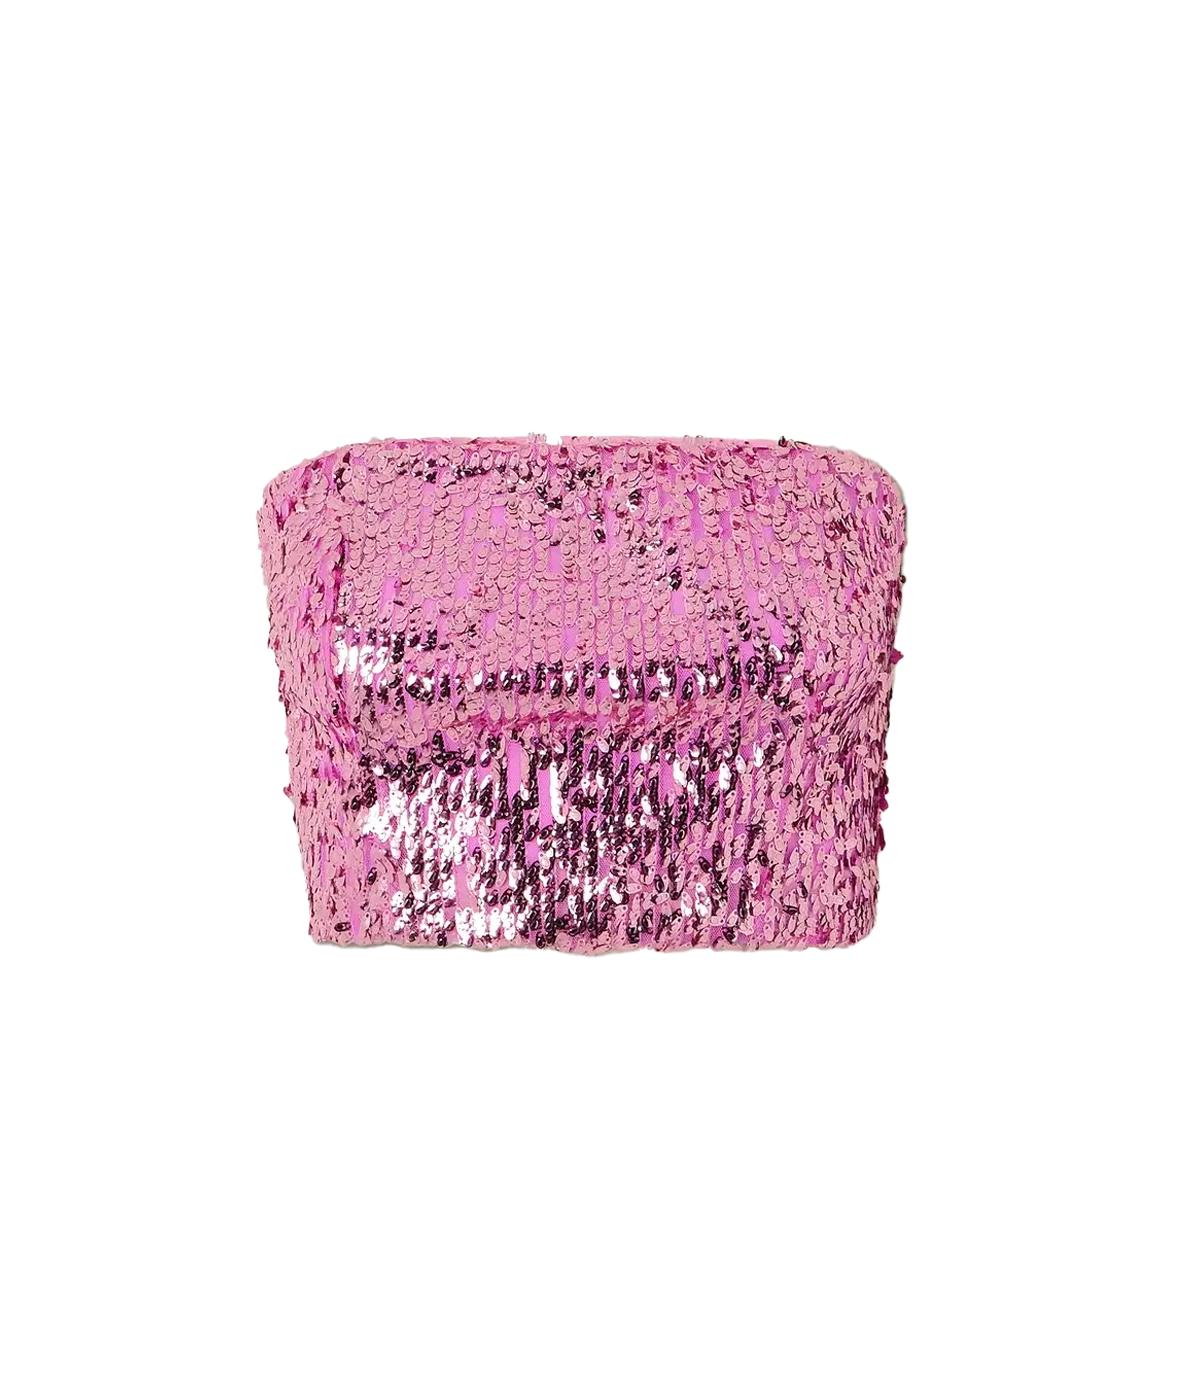 Sequin Crop Top in Fuchsia Pink